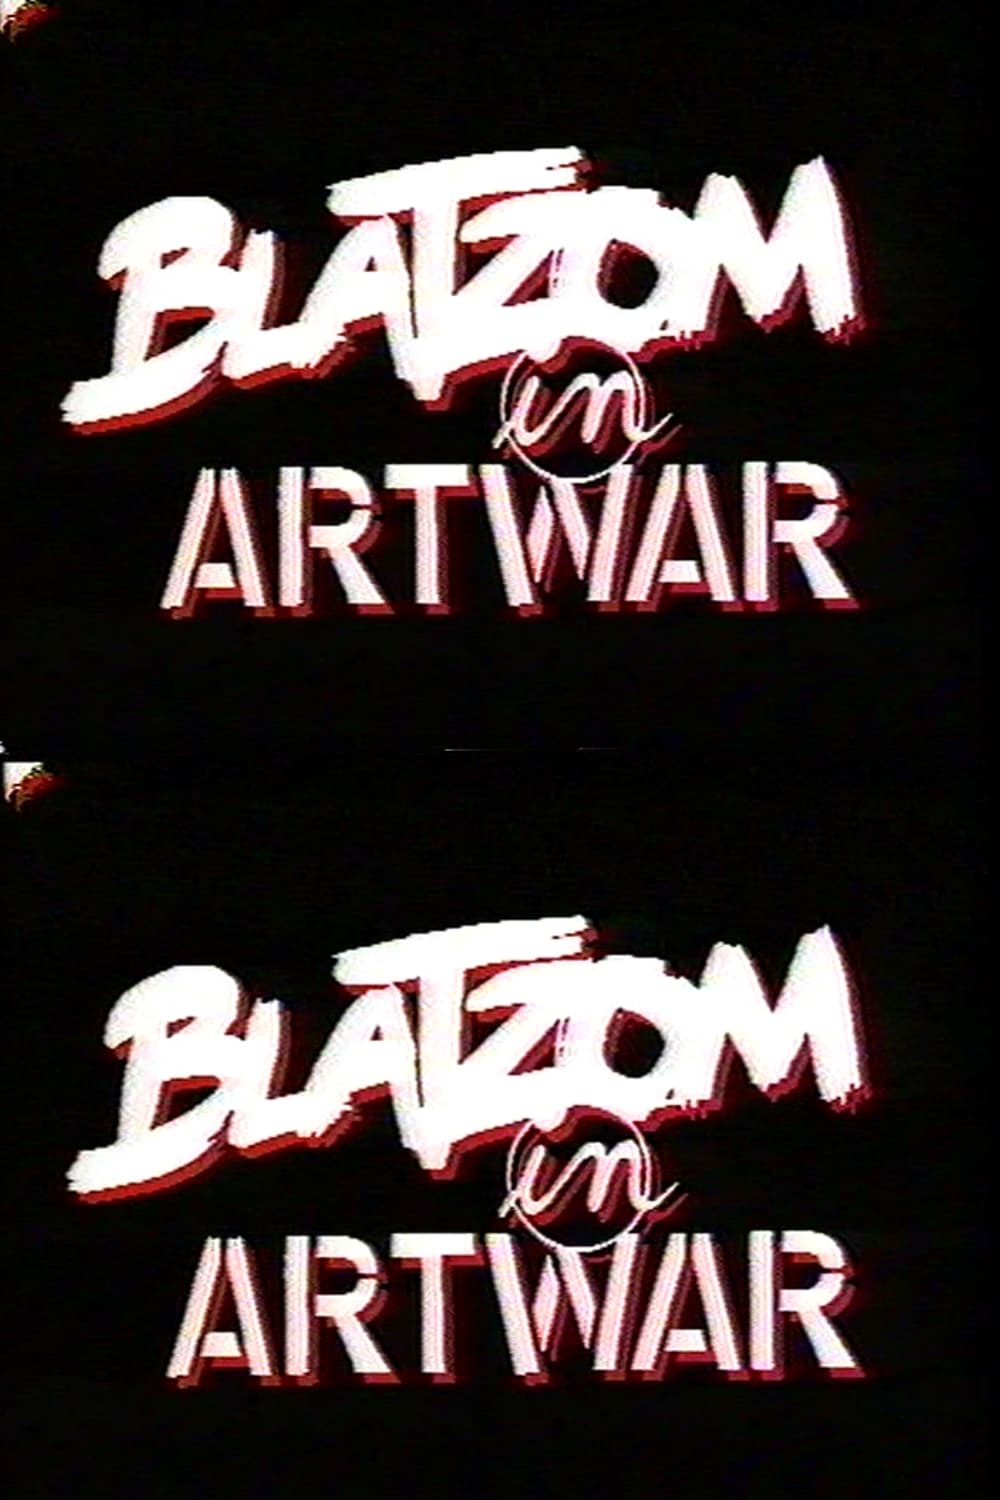 Blatzom in Artwar